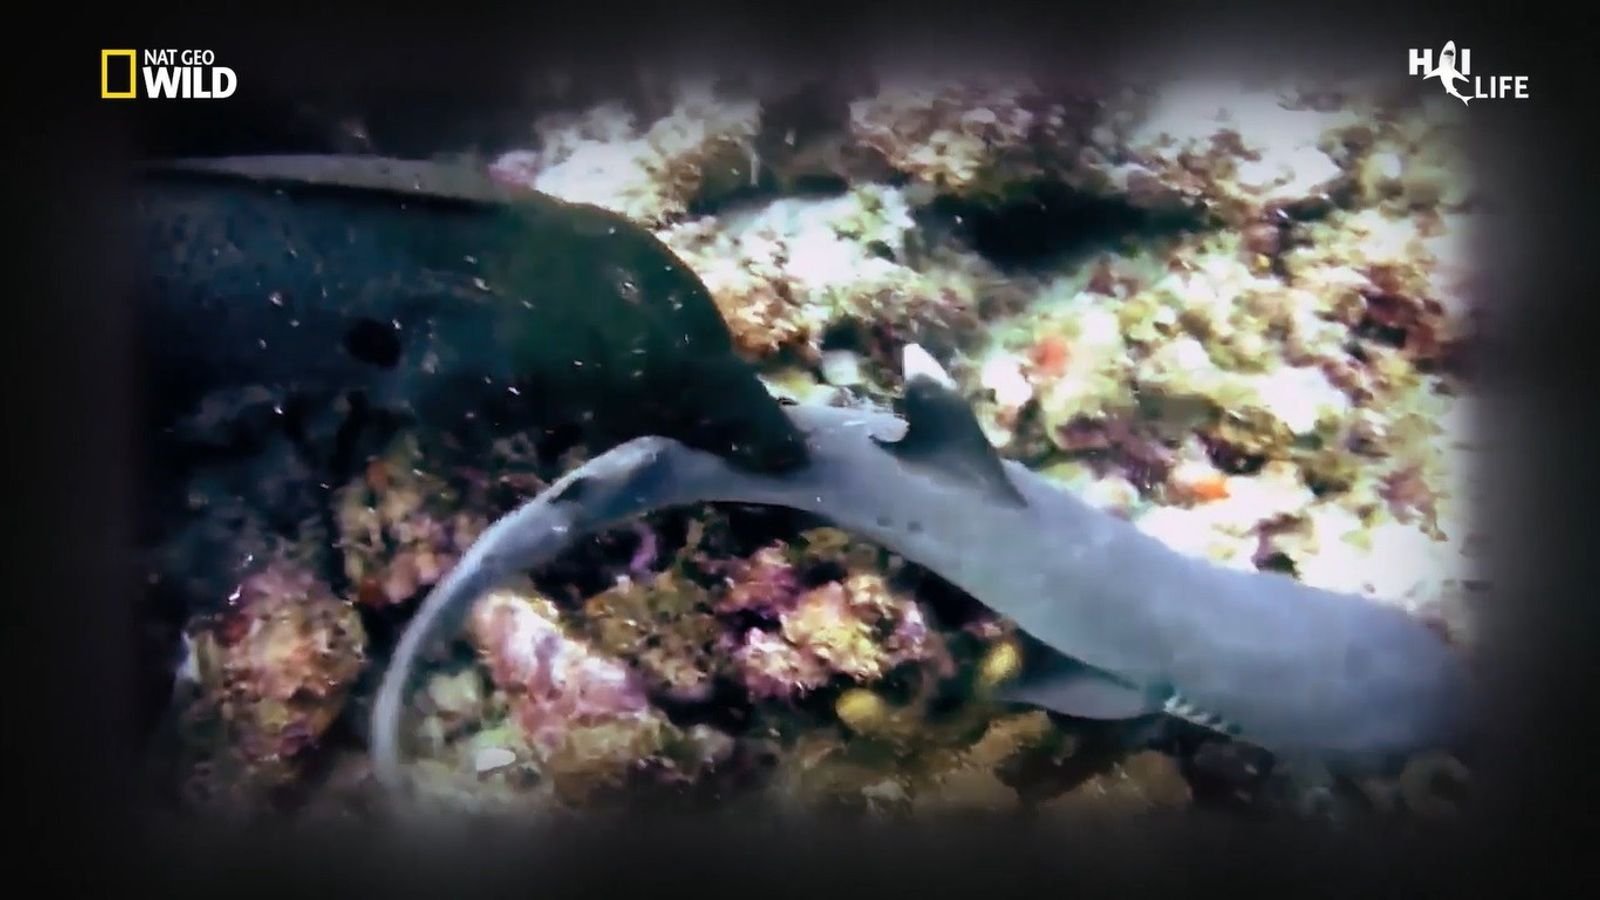 VIDEO - Haie als Gejagte